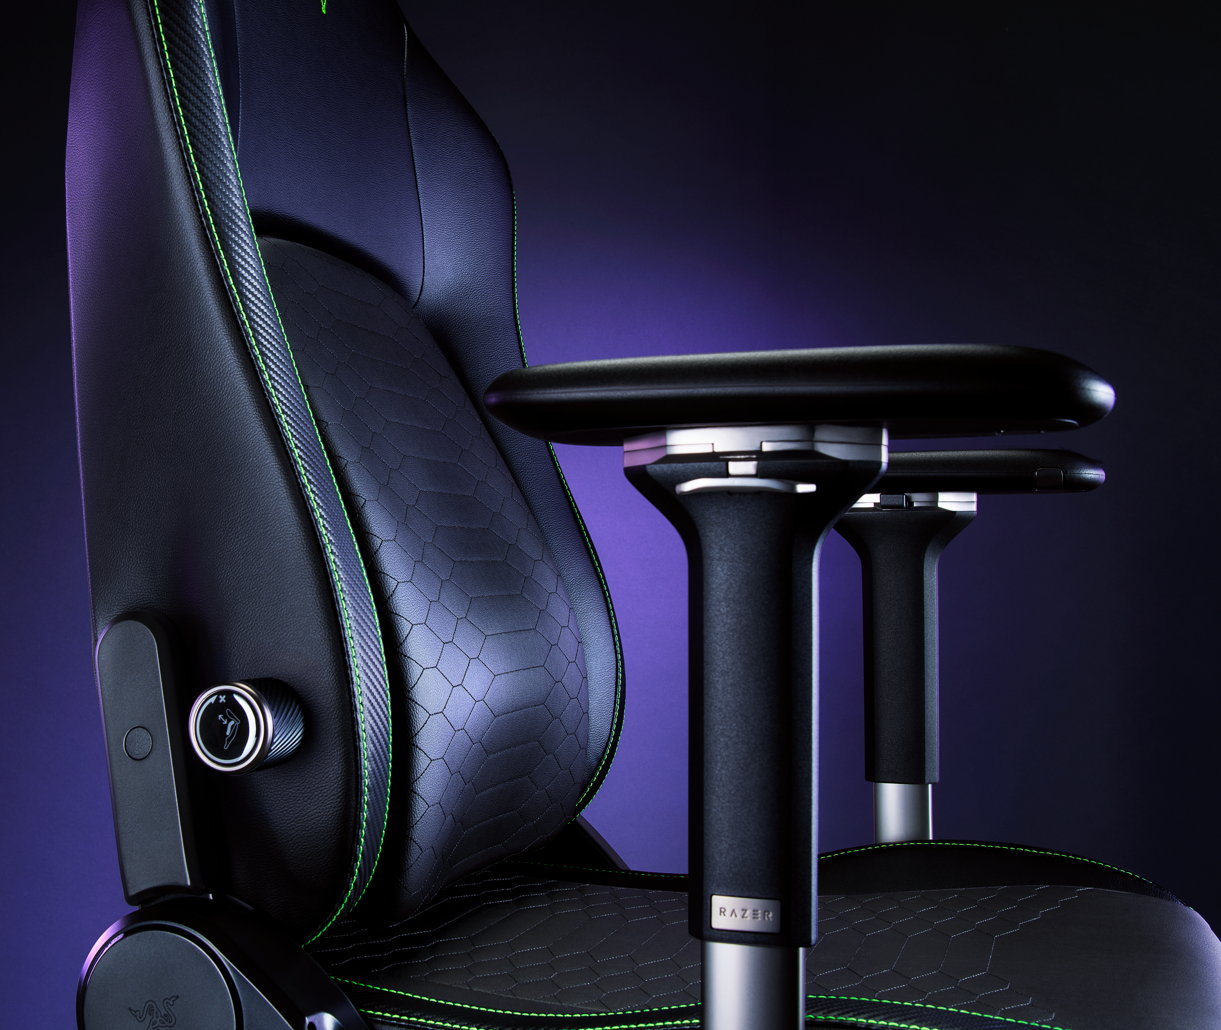 Análisis Razer Iskur Black Edition, la silla gaming más ergonómica